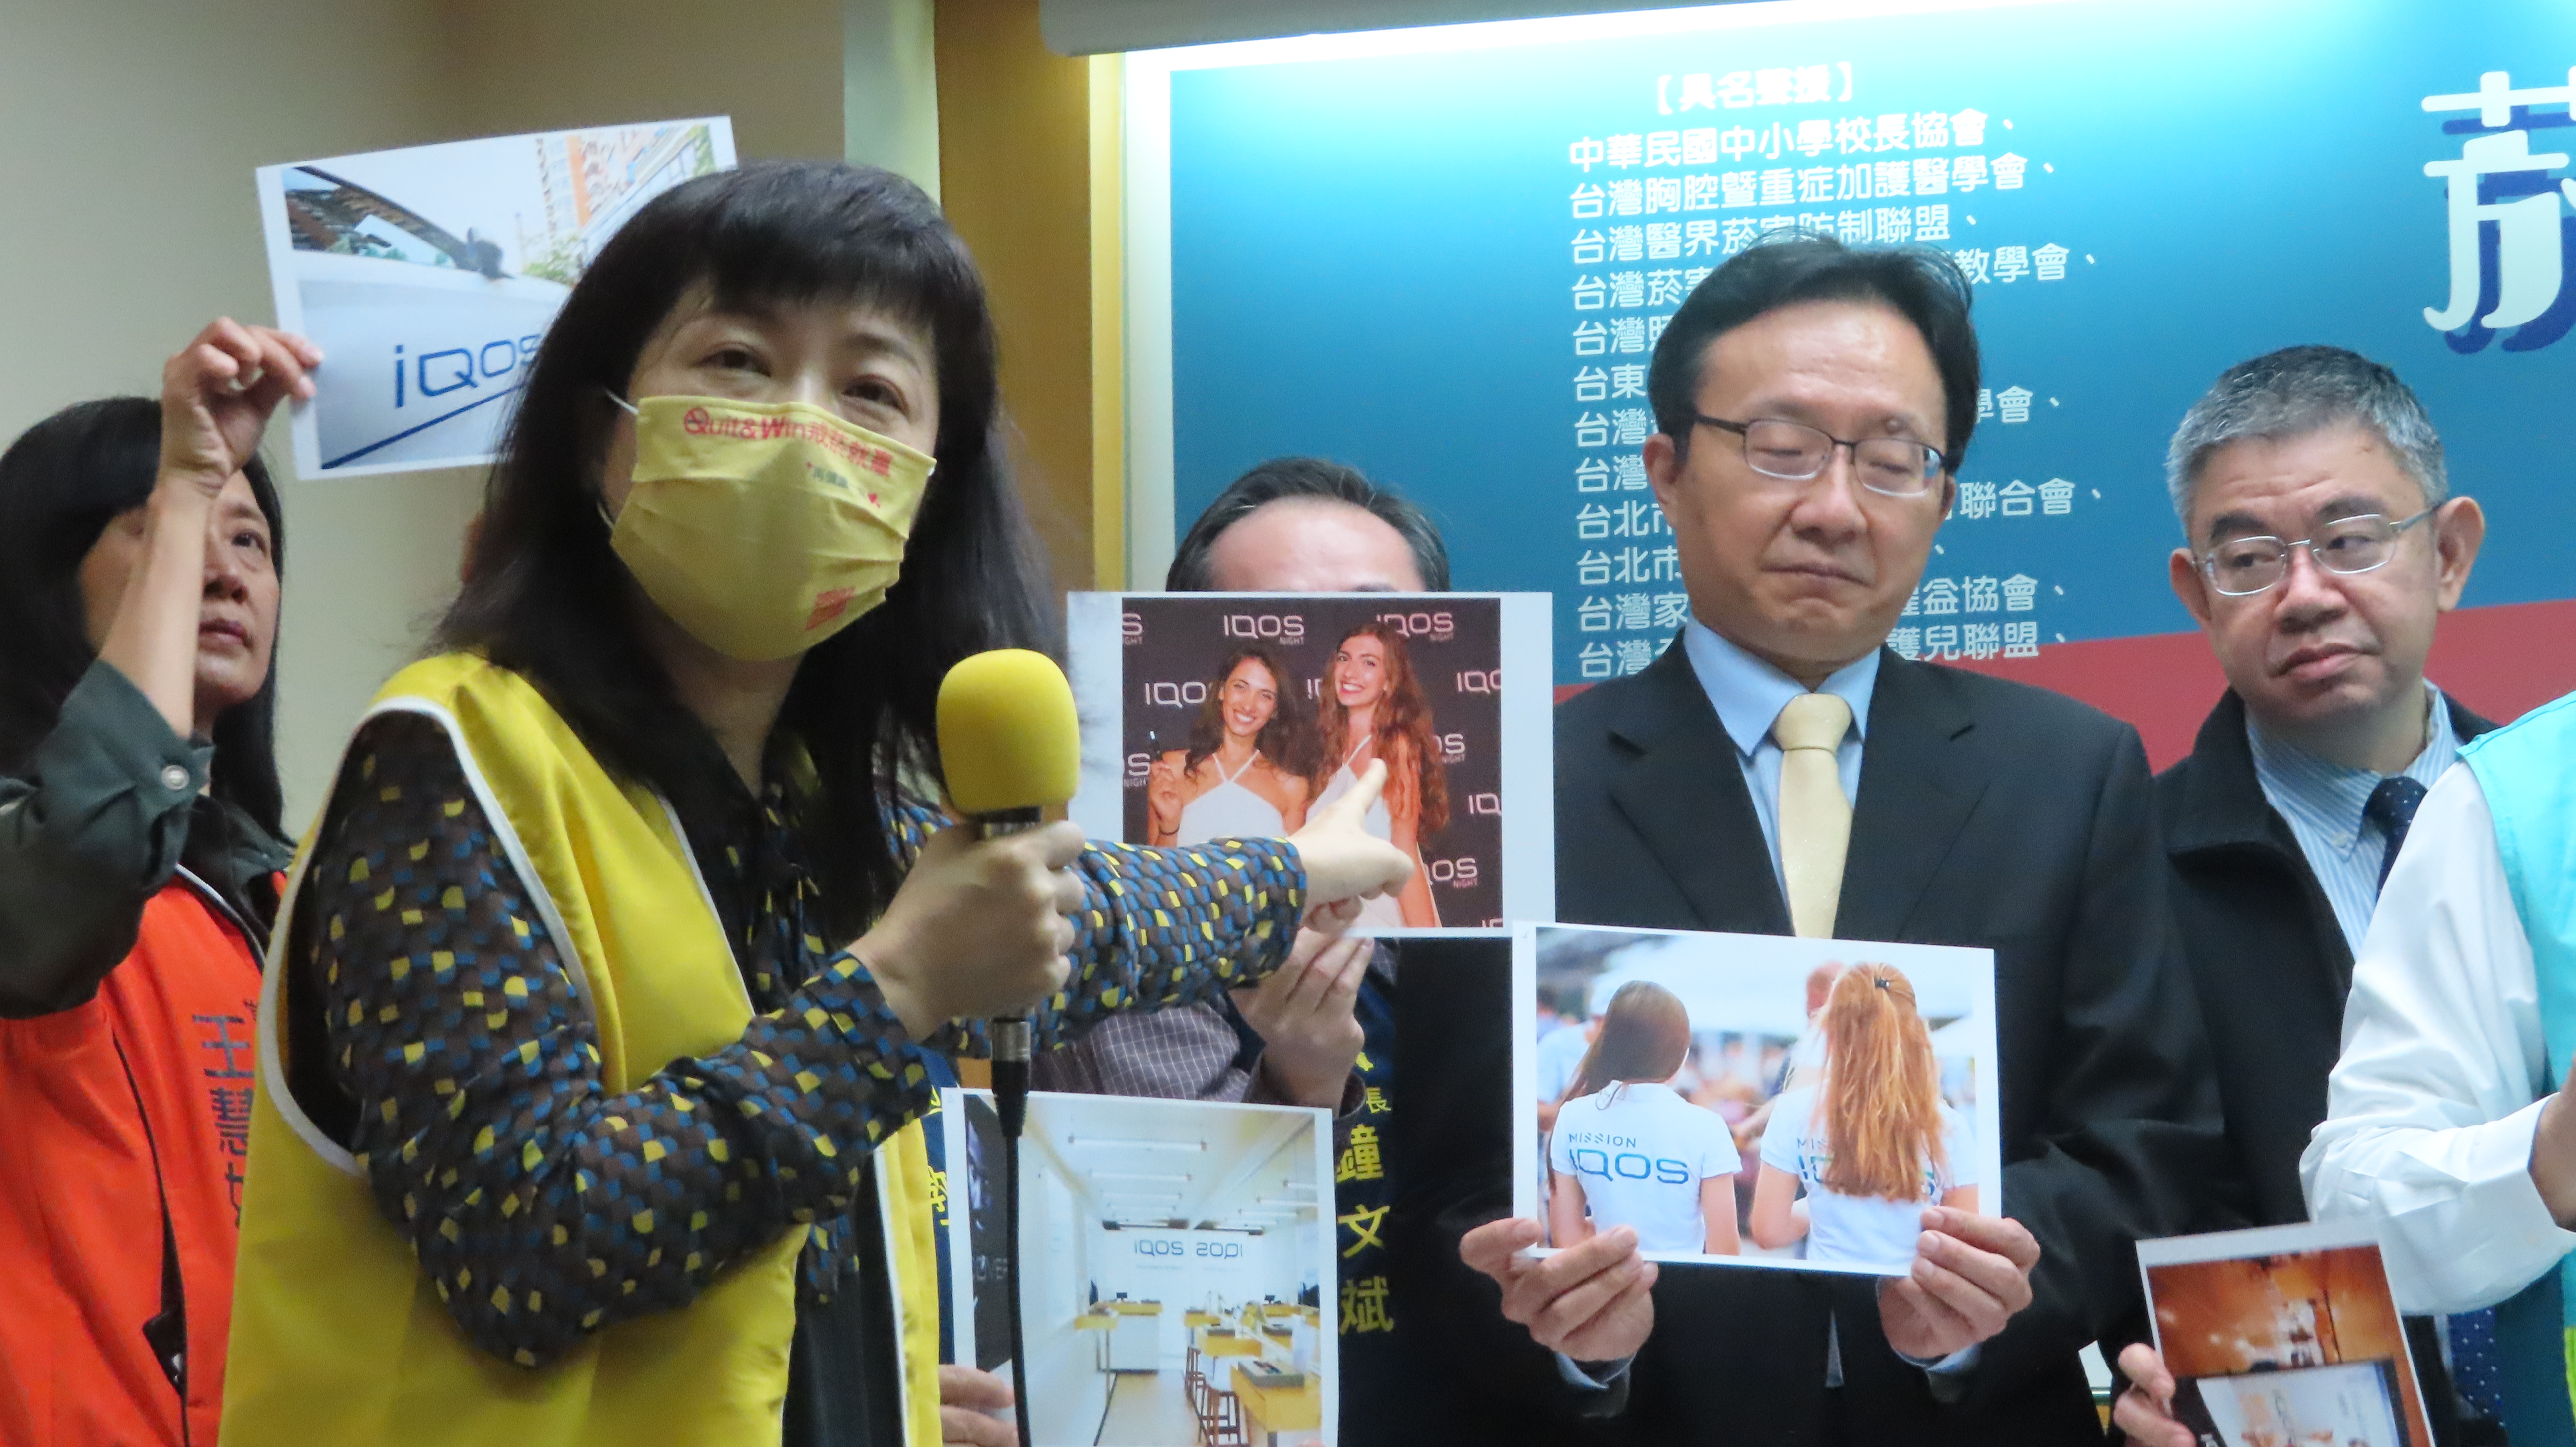 林清麗與家長團體拿出國外菸商行銷加熱菸吸食器的廣告說明對青少年的影響